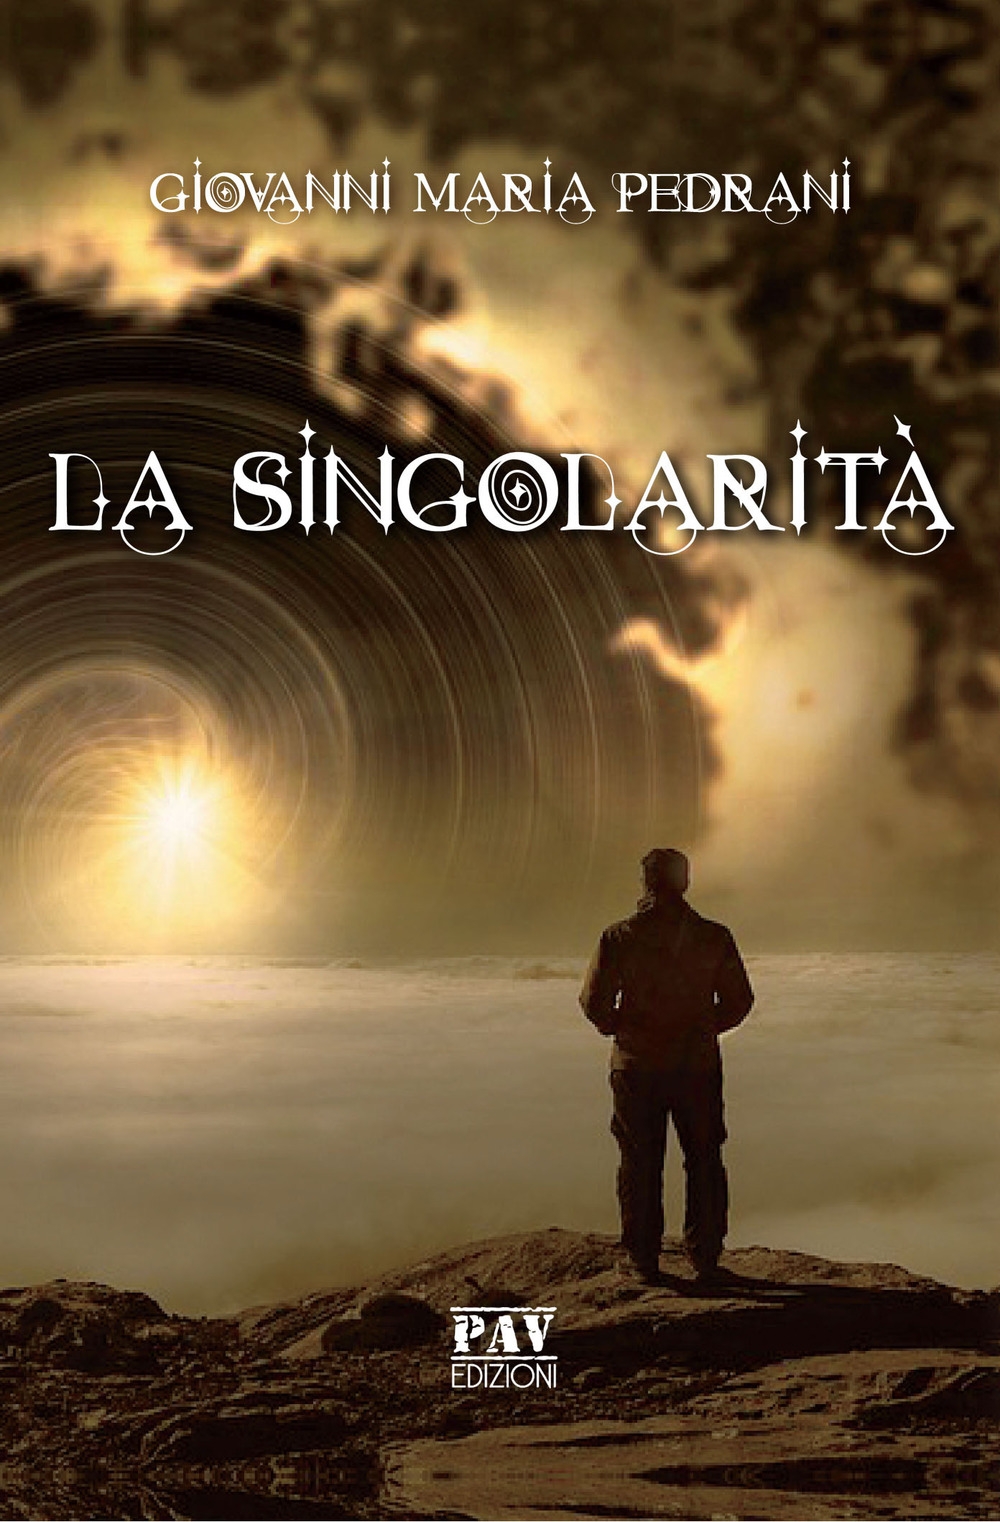 La singolarità - [Pav Edizioni] - Afbeelding 1 van 1